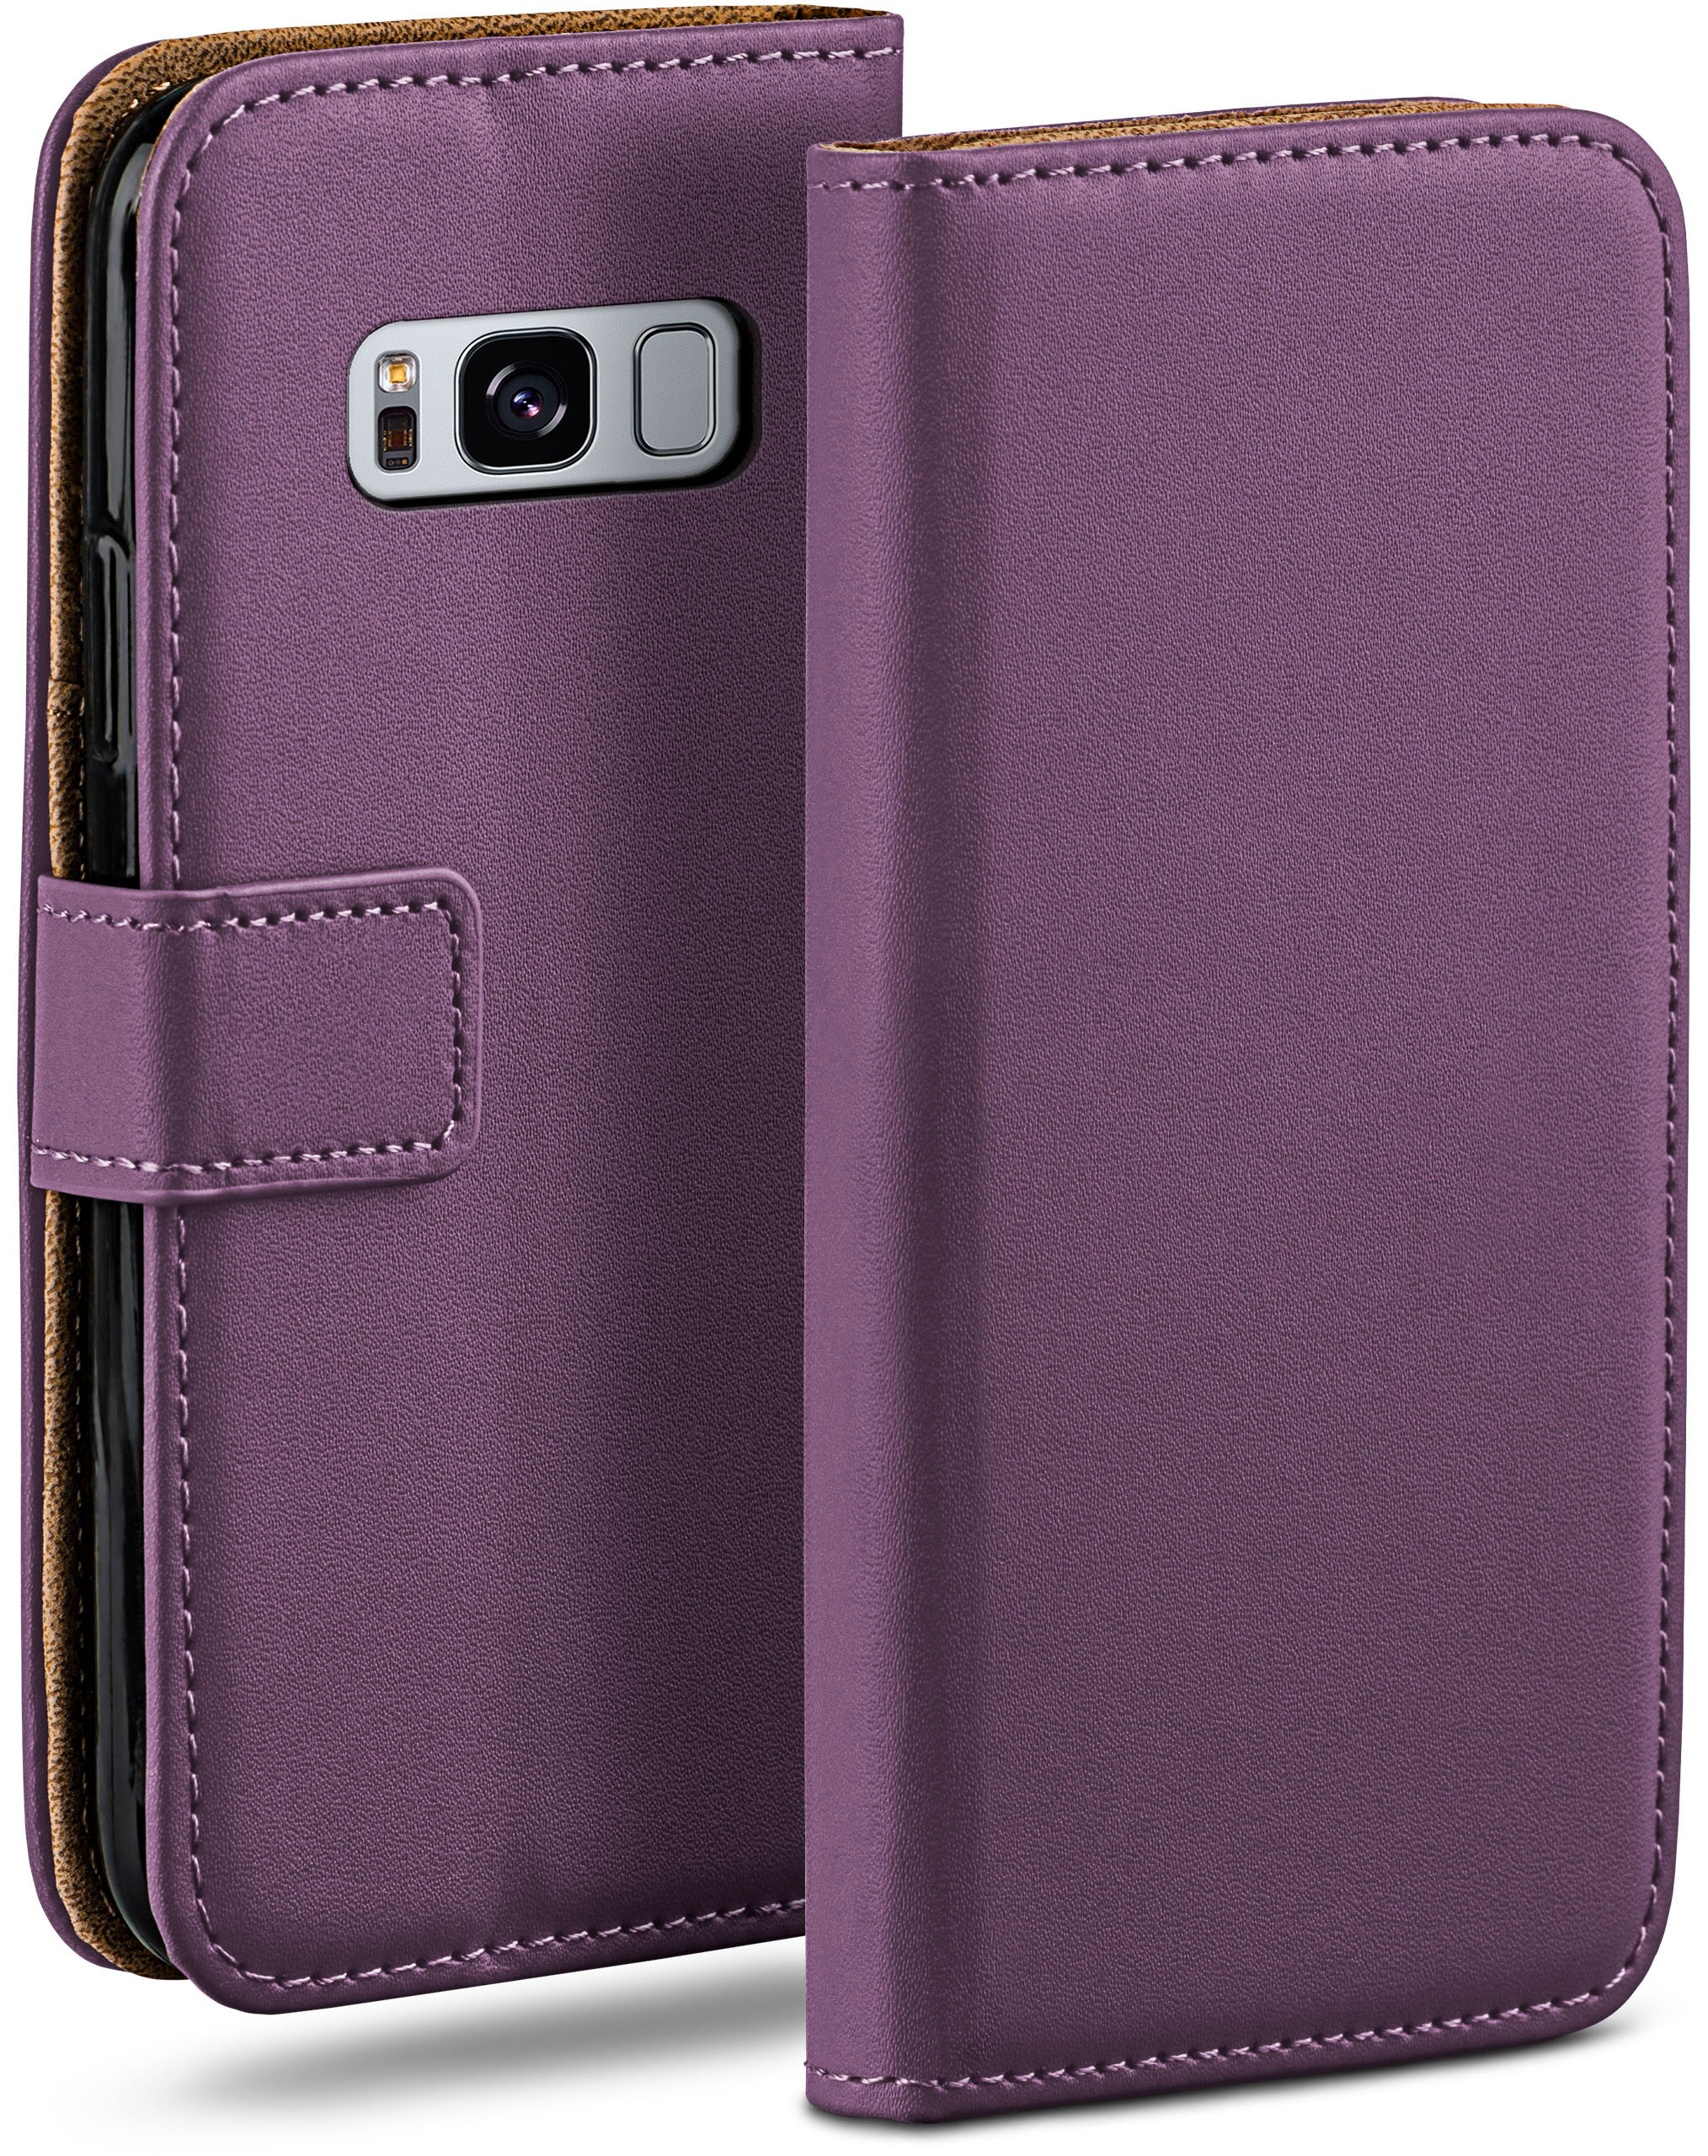 Case, Galaxy S8, Bookcover, Samsung, Indigo-Violet Book MOEX